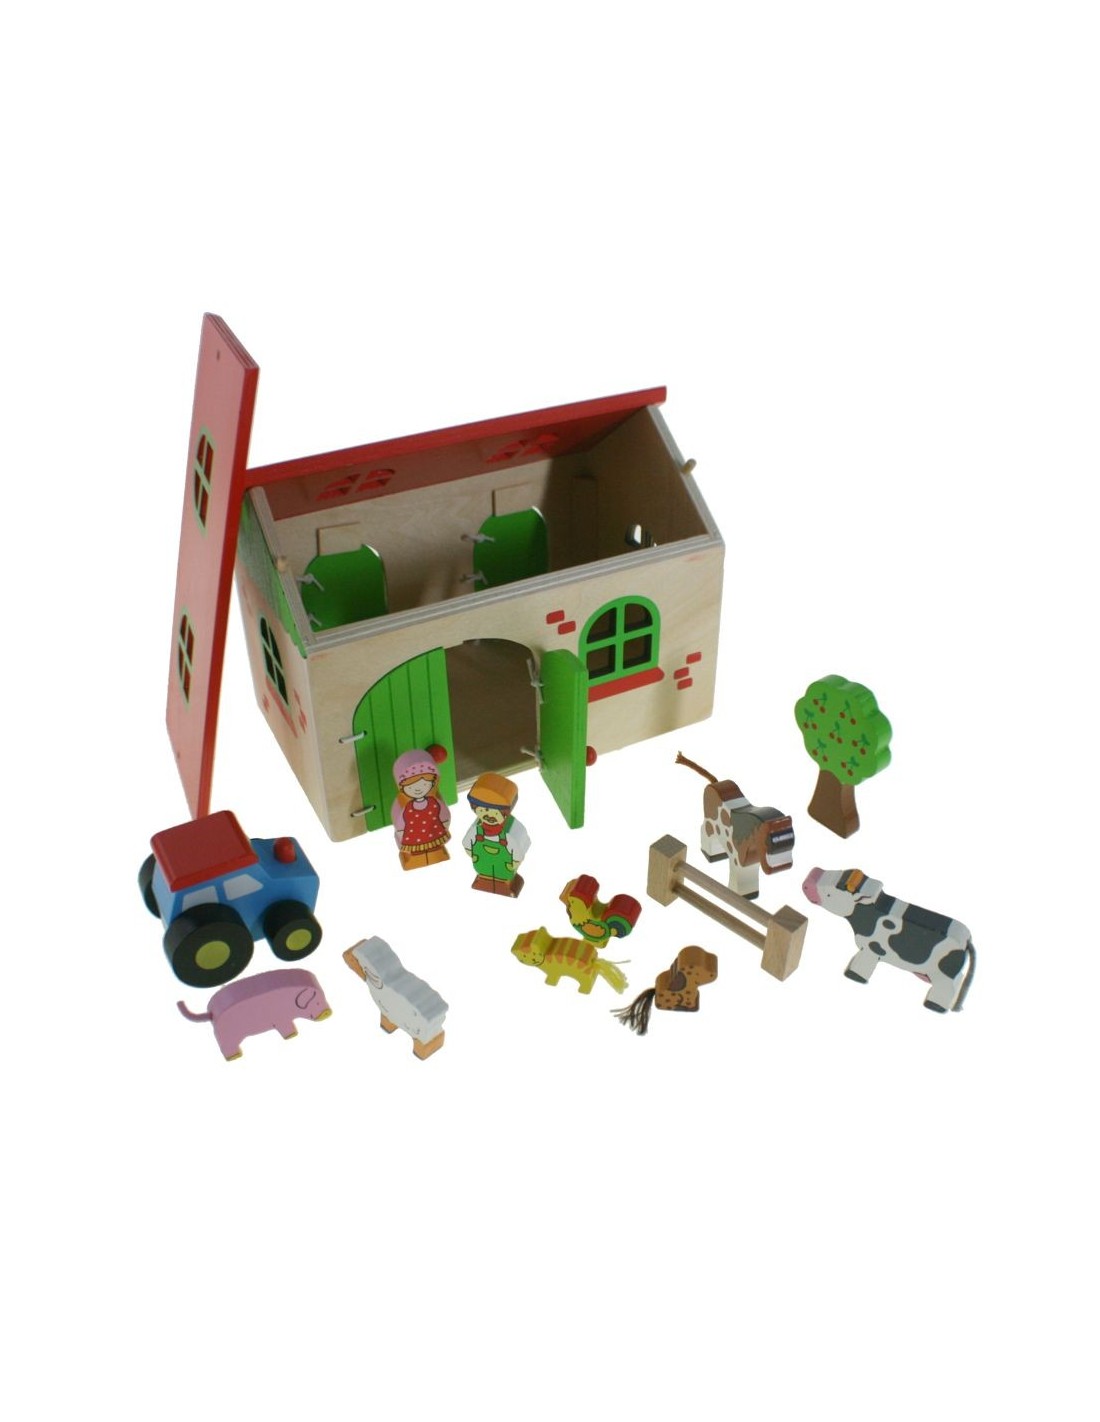 Ferme stable avec figurines en bois et jeu d'accessoires pour enfants